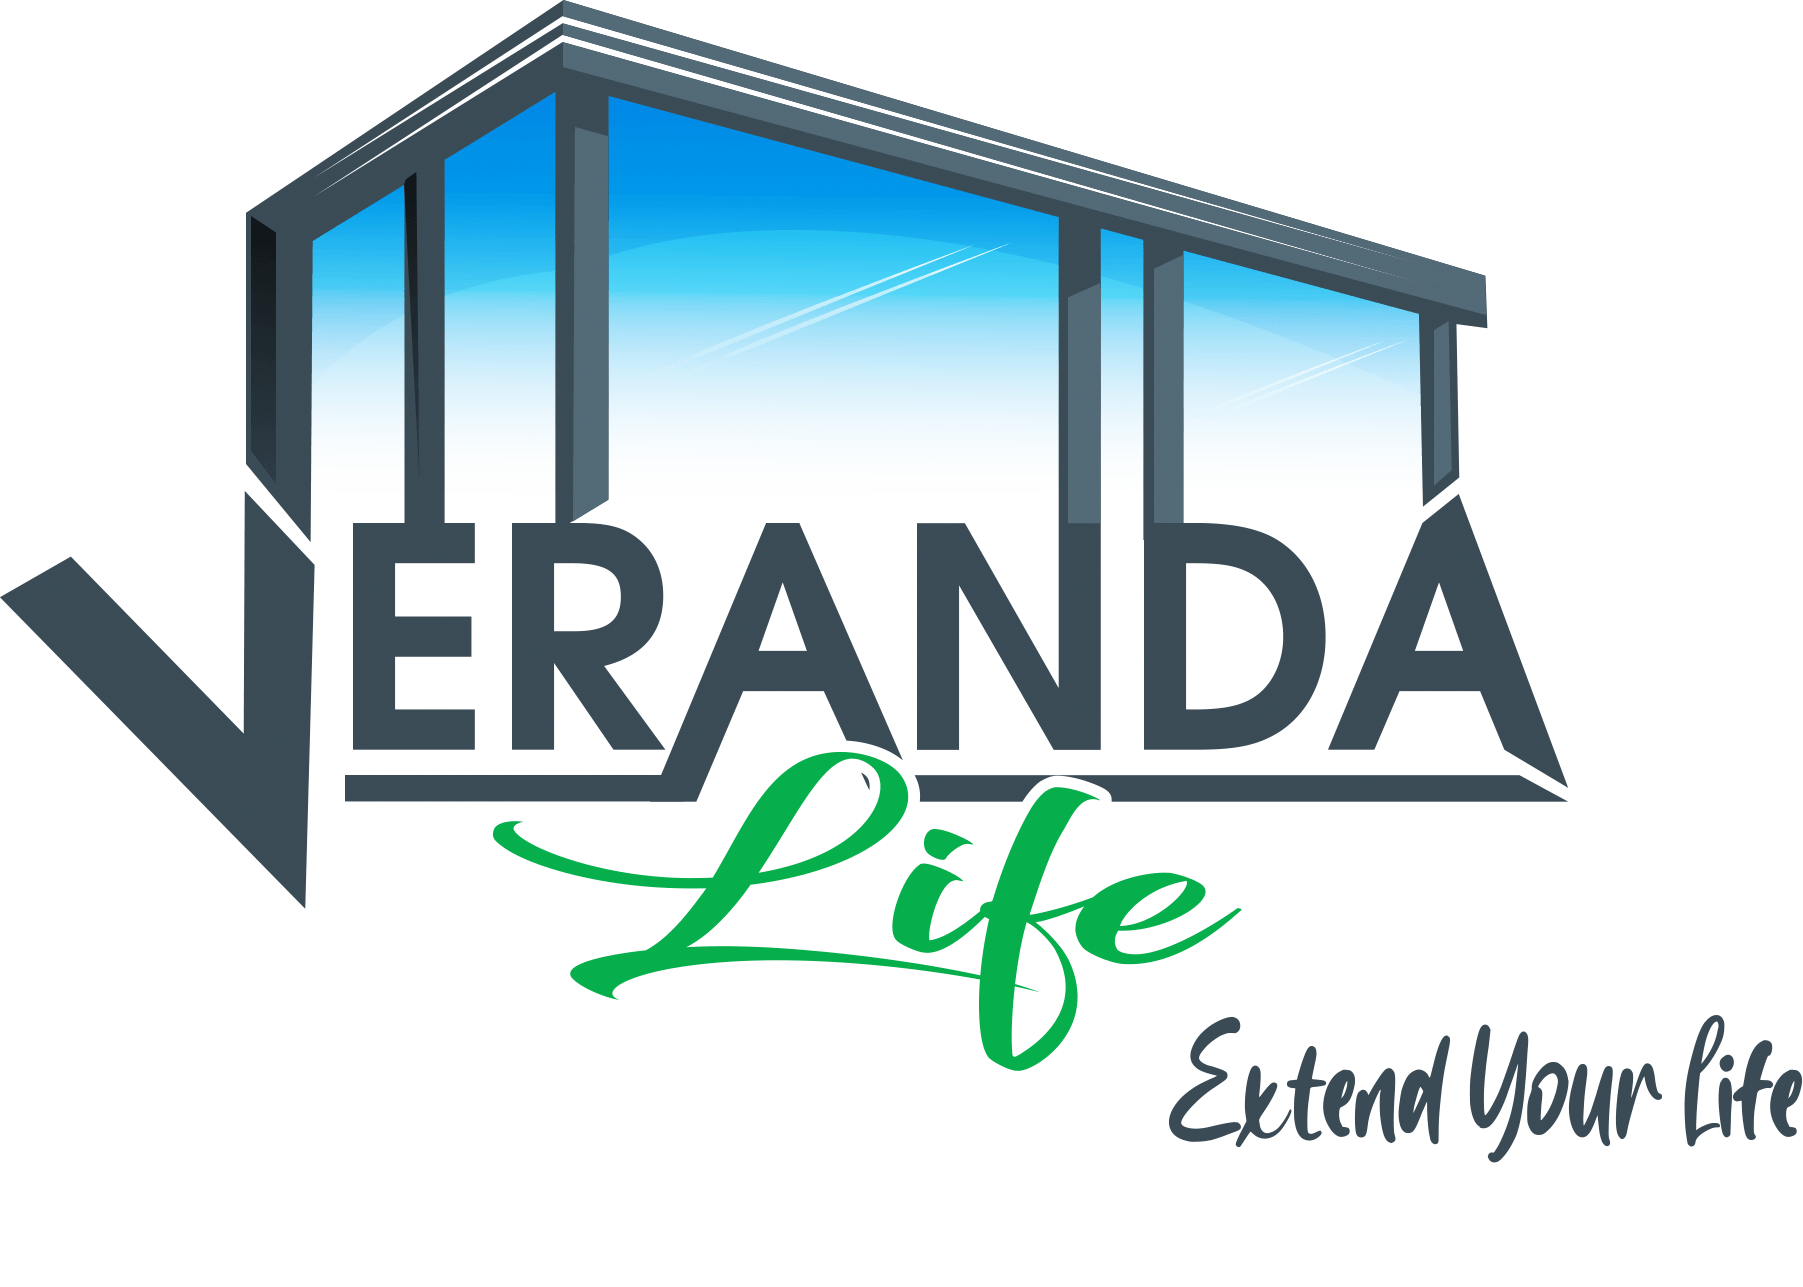 VerandaLife dé specialist op het gebied van duurzame maatwerk veranda’s, terrasoverkappingen en glazen schuifwanden.